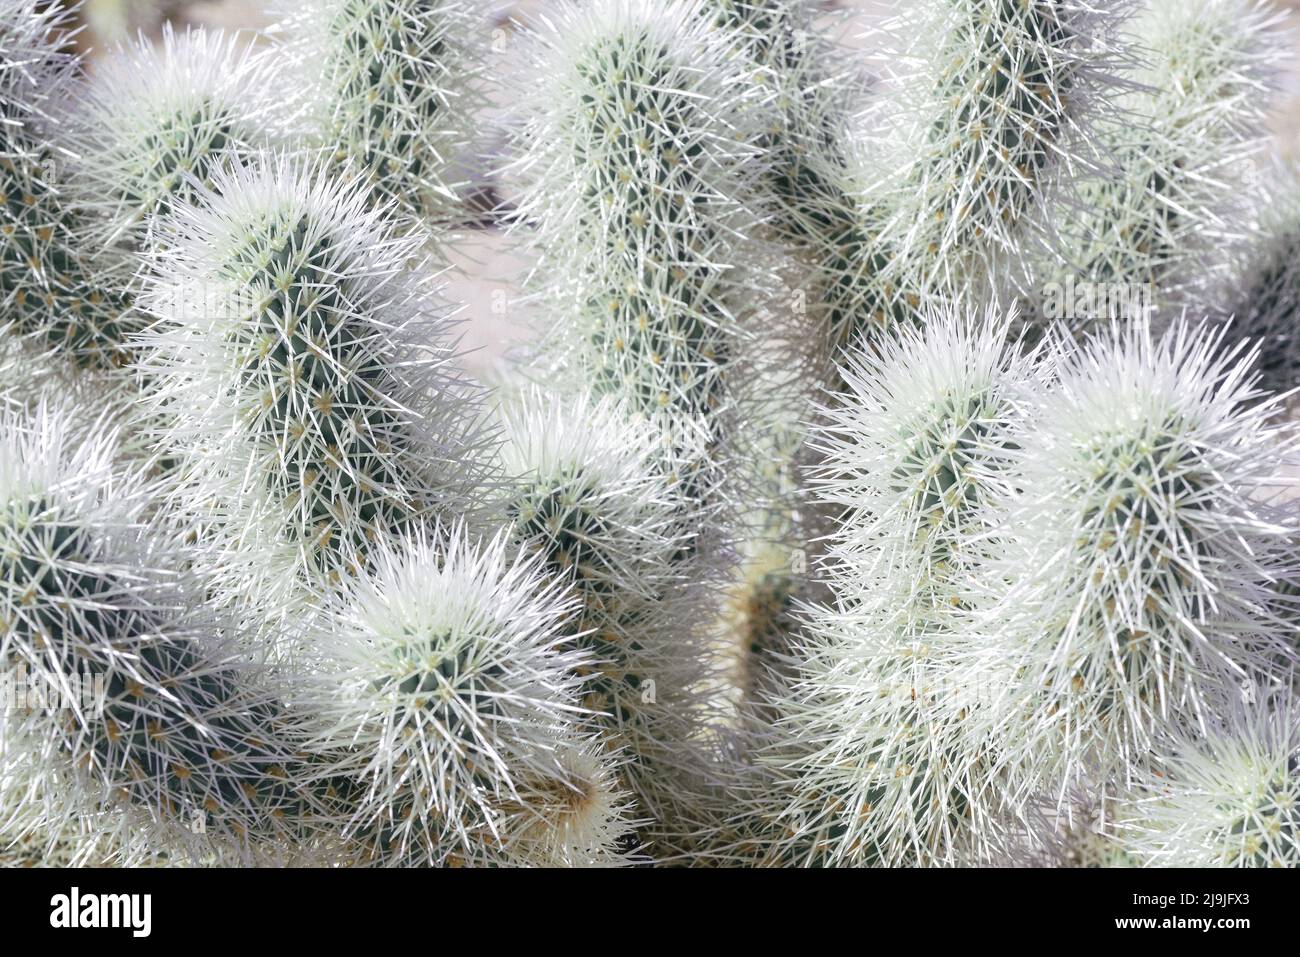 Primer plano del cactus Cholla, único y de varias espinadas, en el Parque Nacional Joshua Tree en el desierto de Mojave, CA Foto de stock